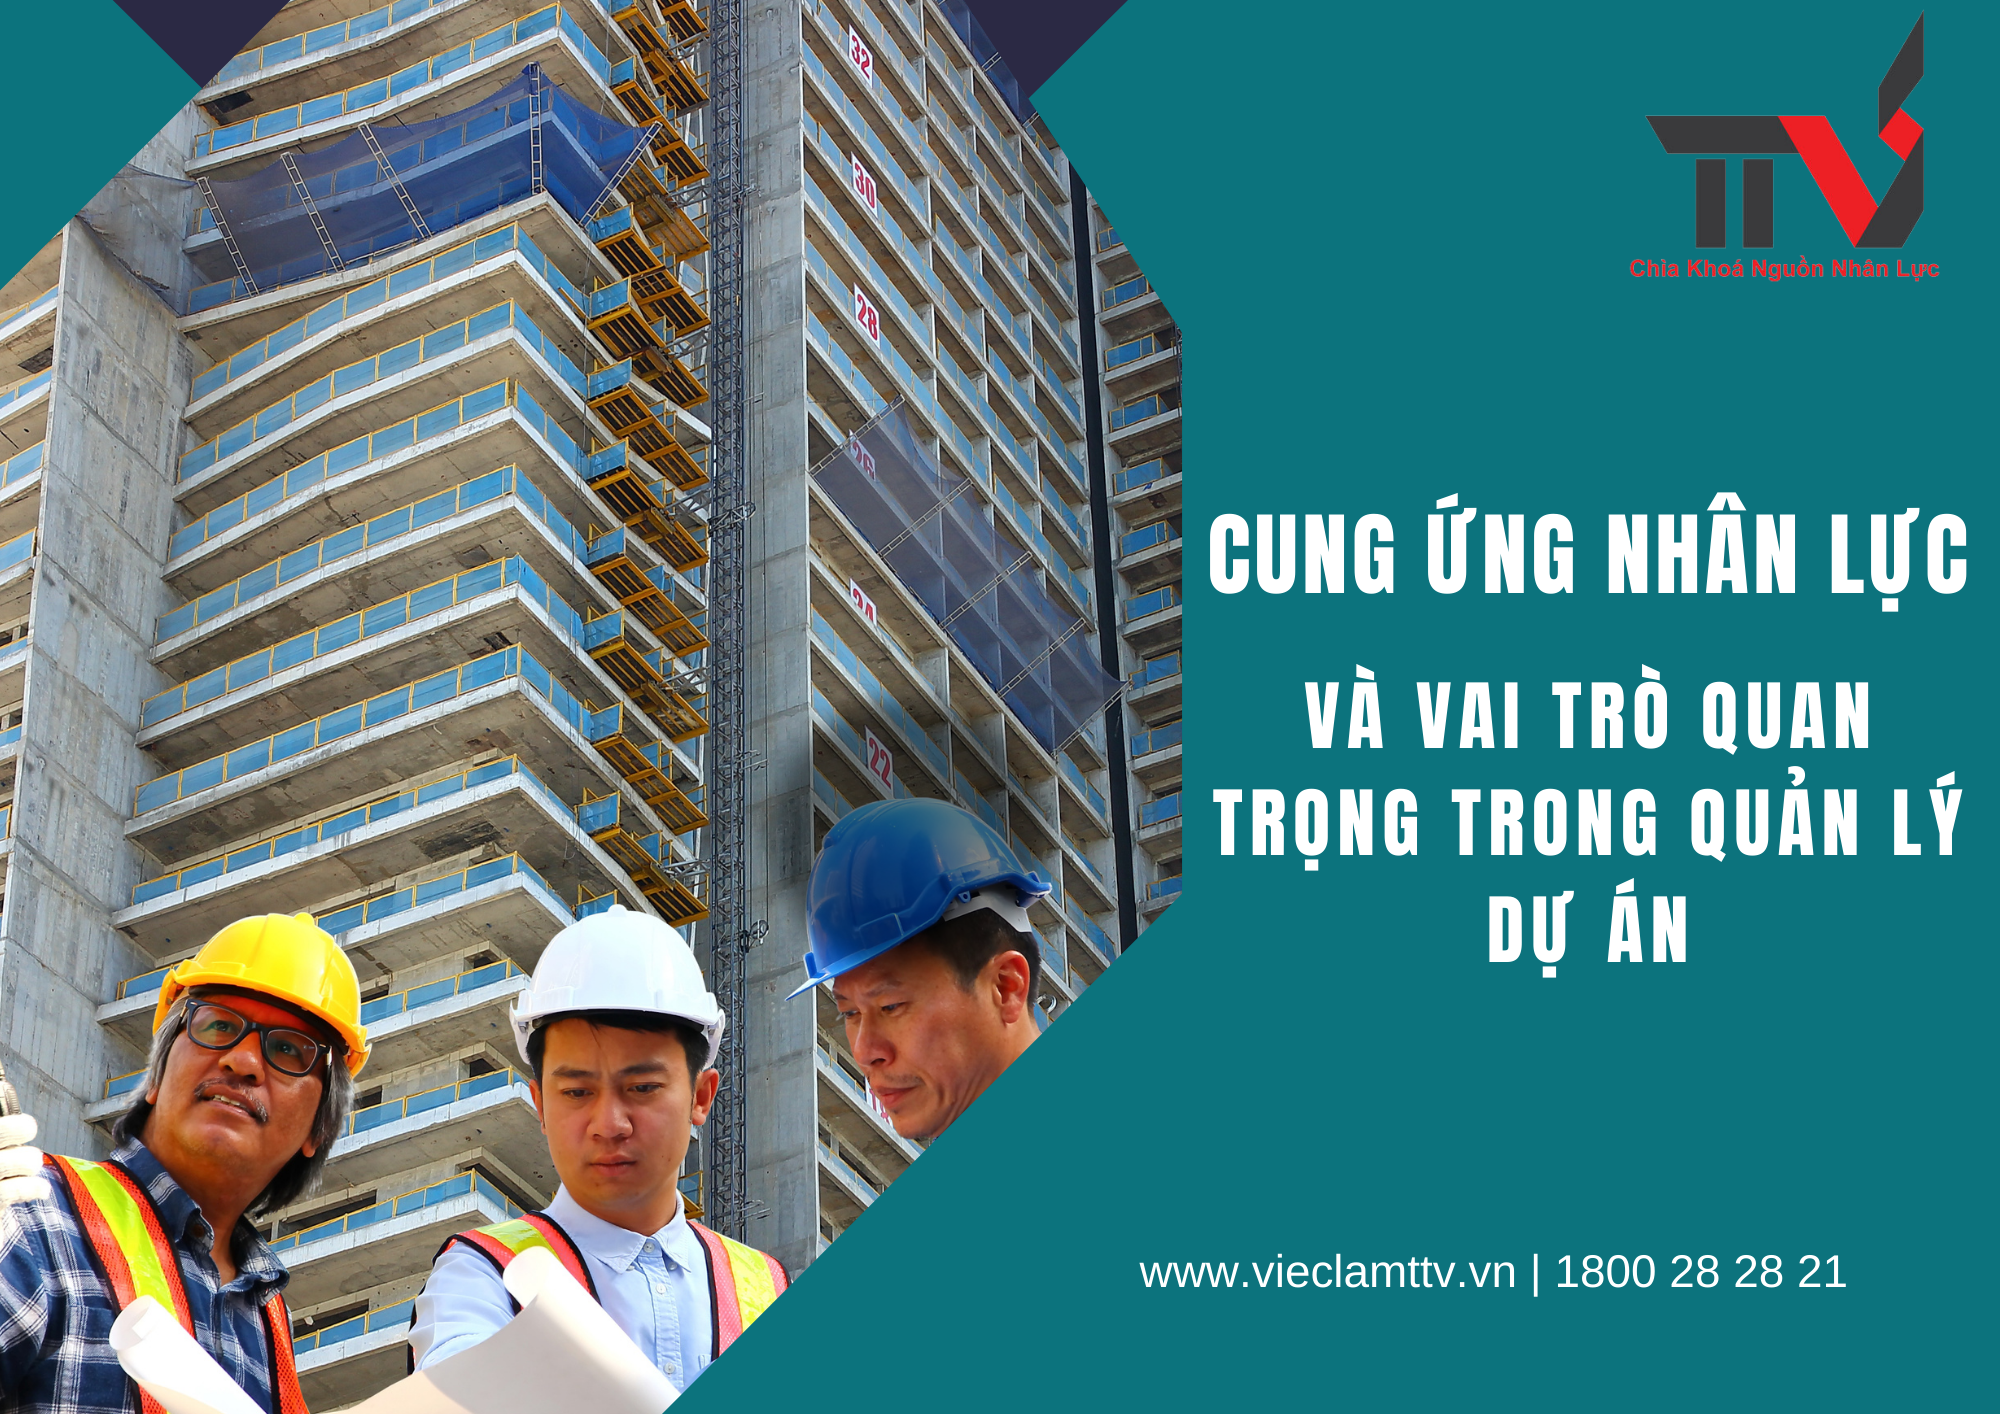 Cung ứng nhân lực và vai trò quan trọng trong quản lý dự án tại khu vực Hồ Chí Minh, Bình Dương và Đồng Nai